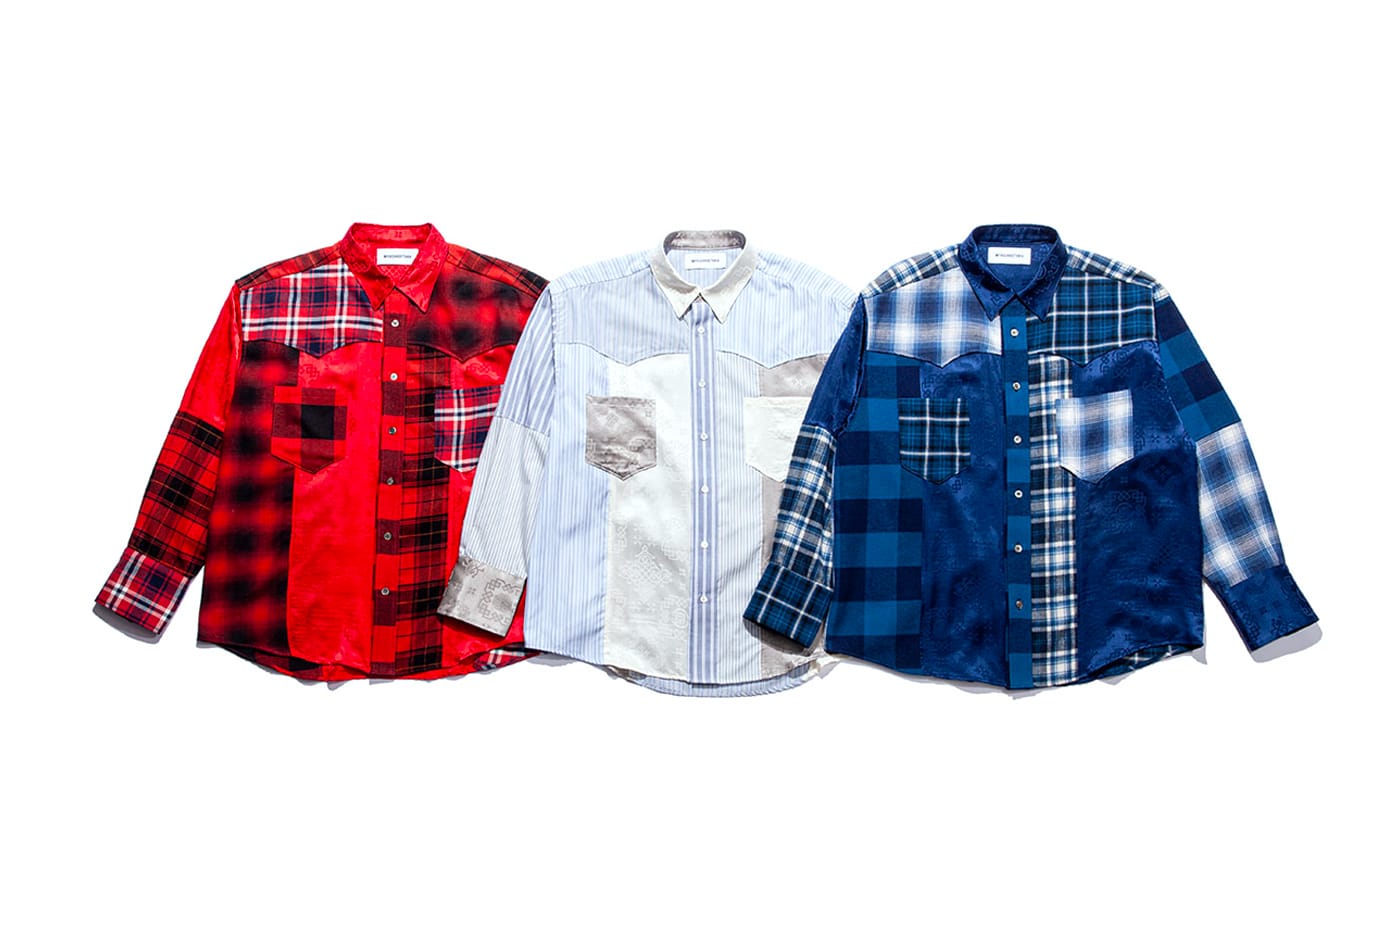 MIYAGIHIDETAKA x CLOT 2021 Shirt Capsule | HYPEBEAST